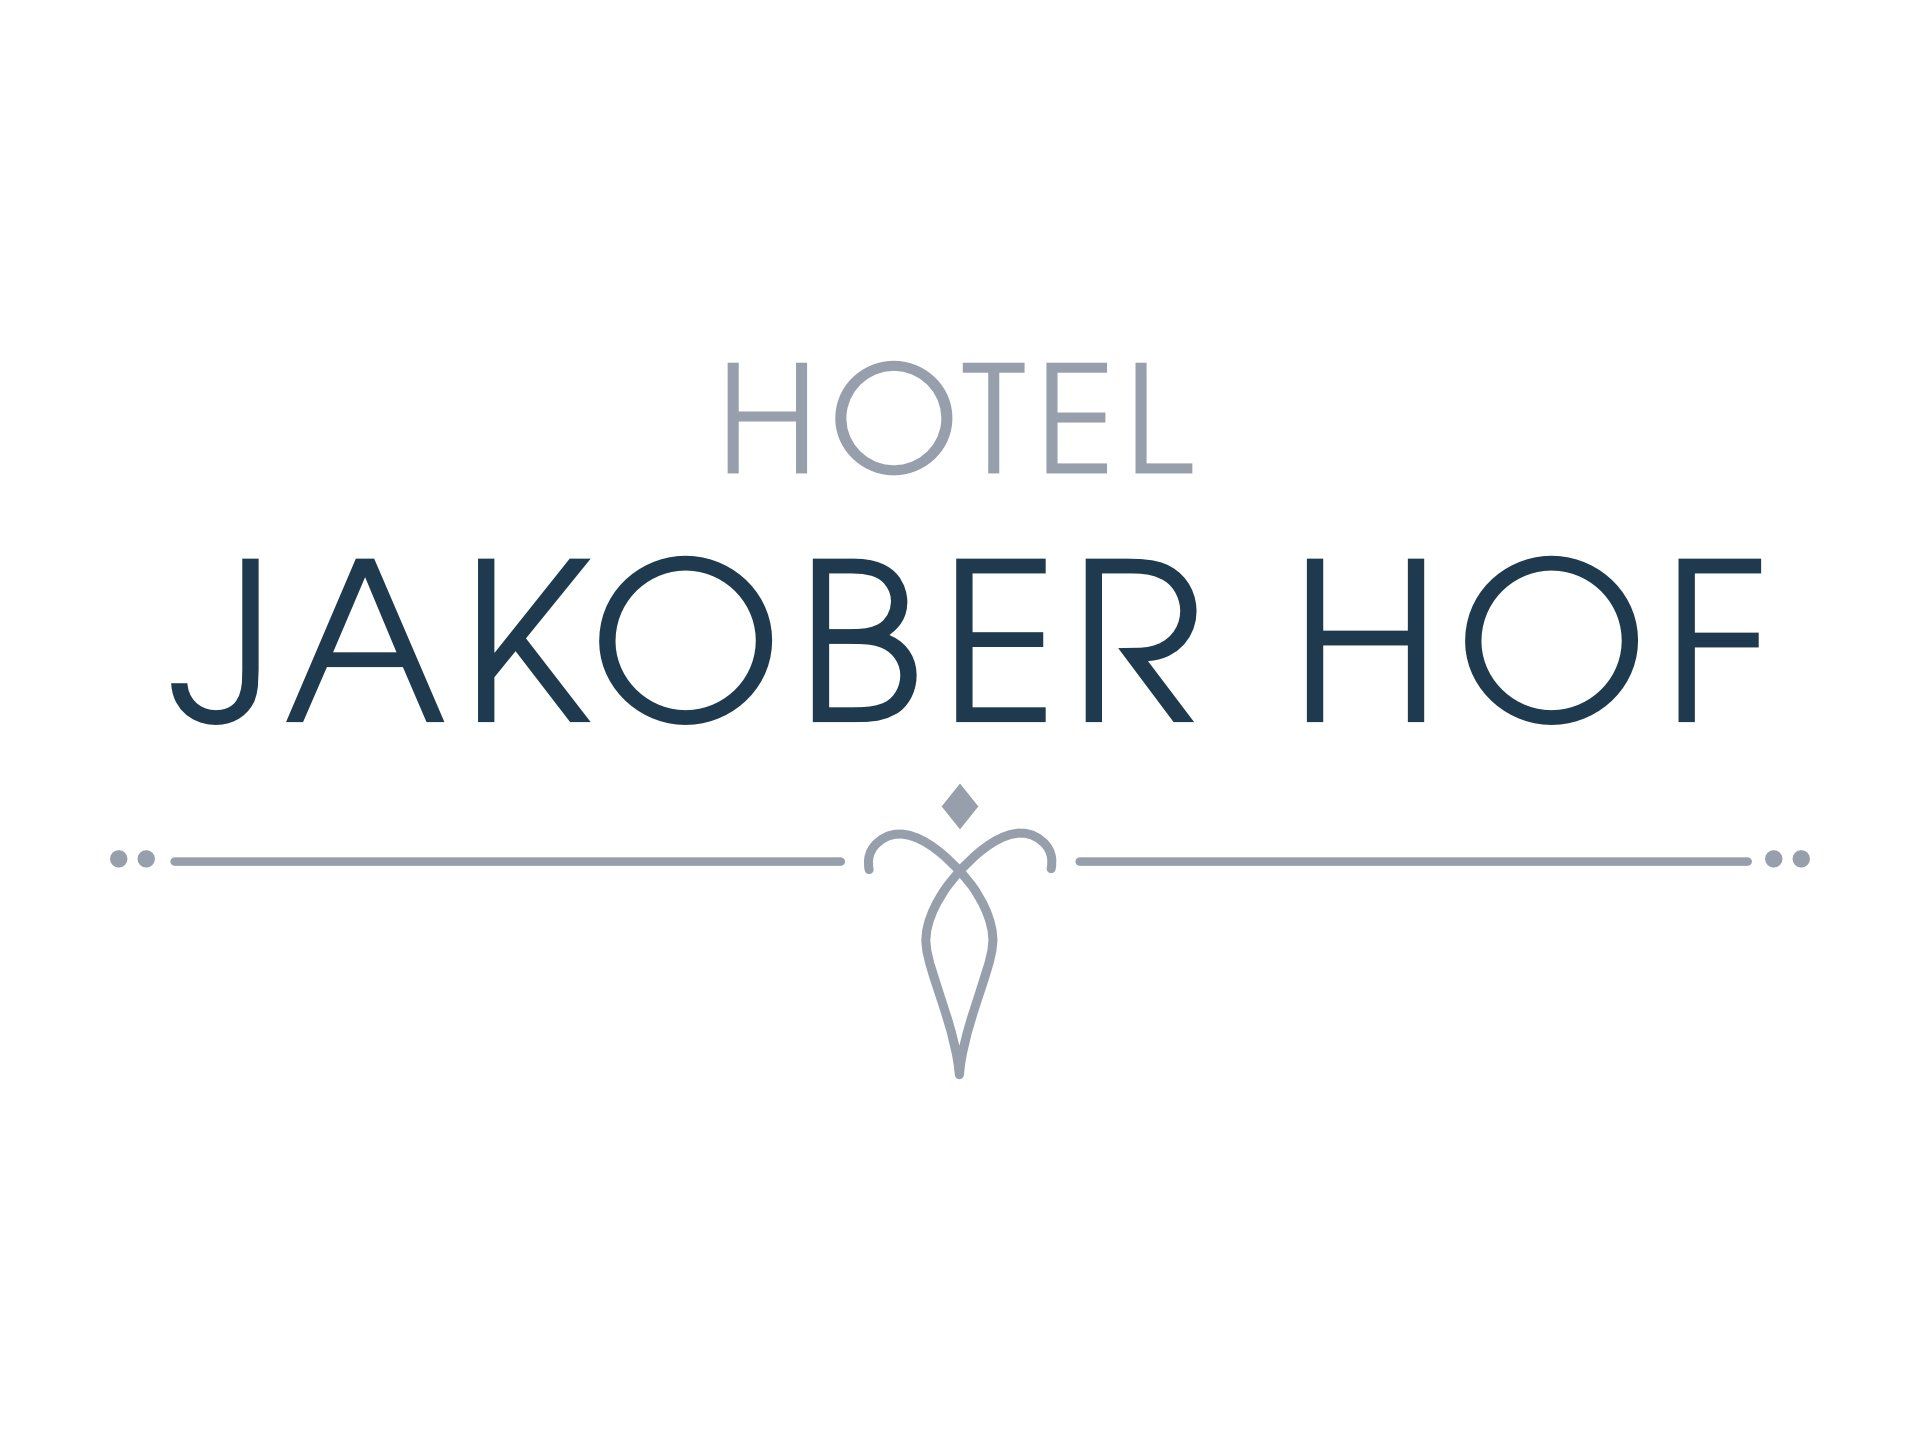 Hotel Jakoberhof